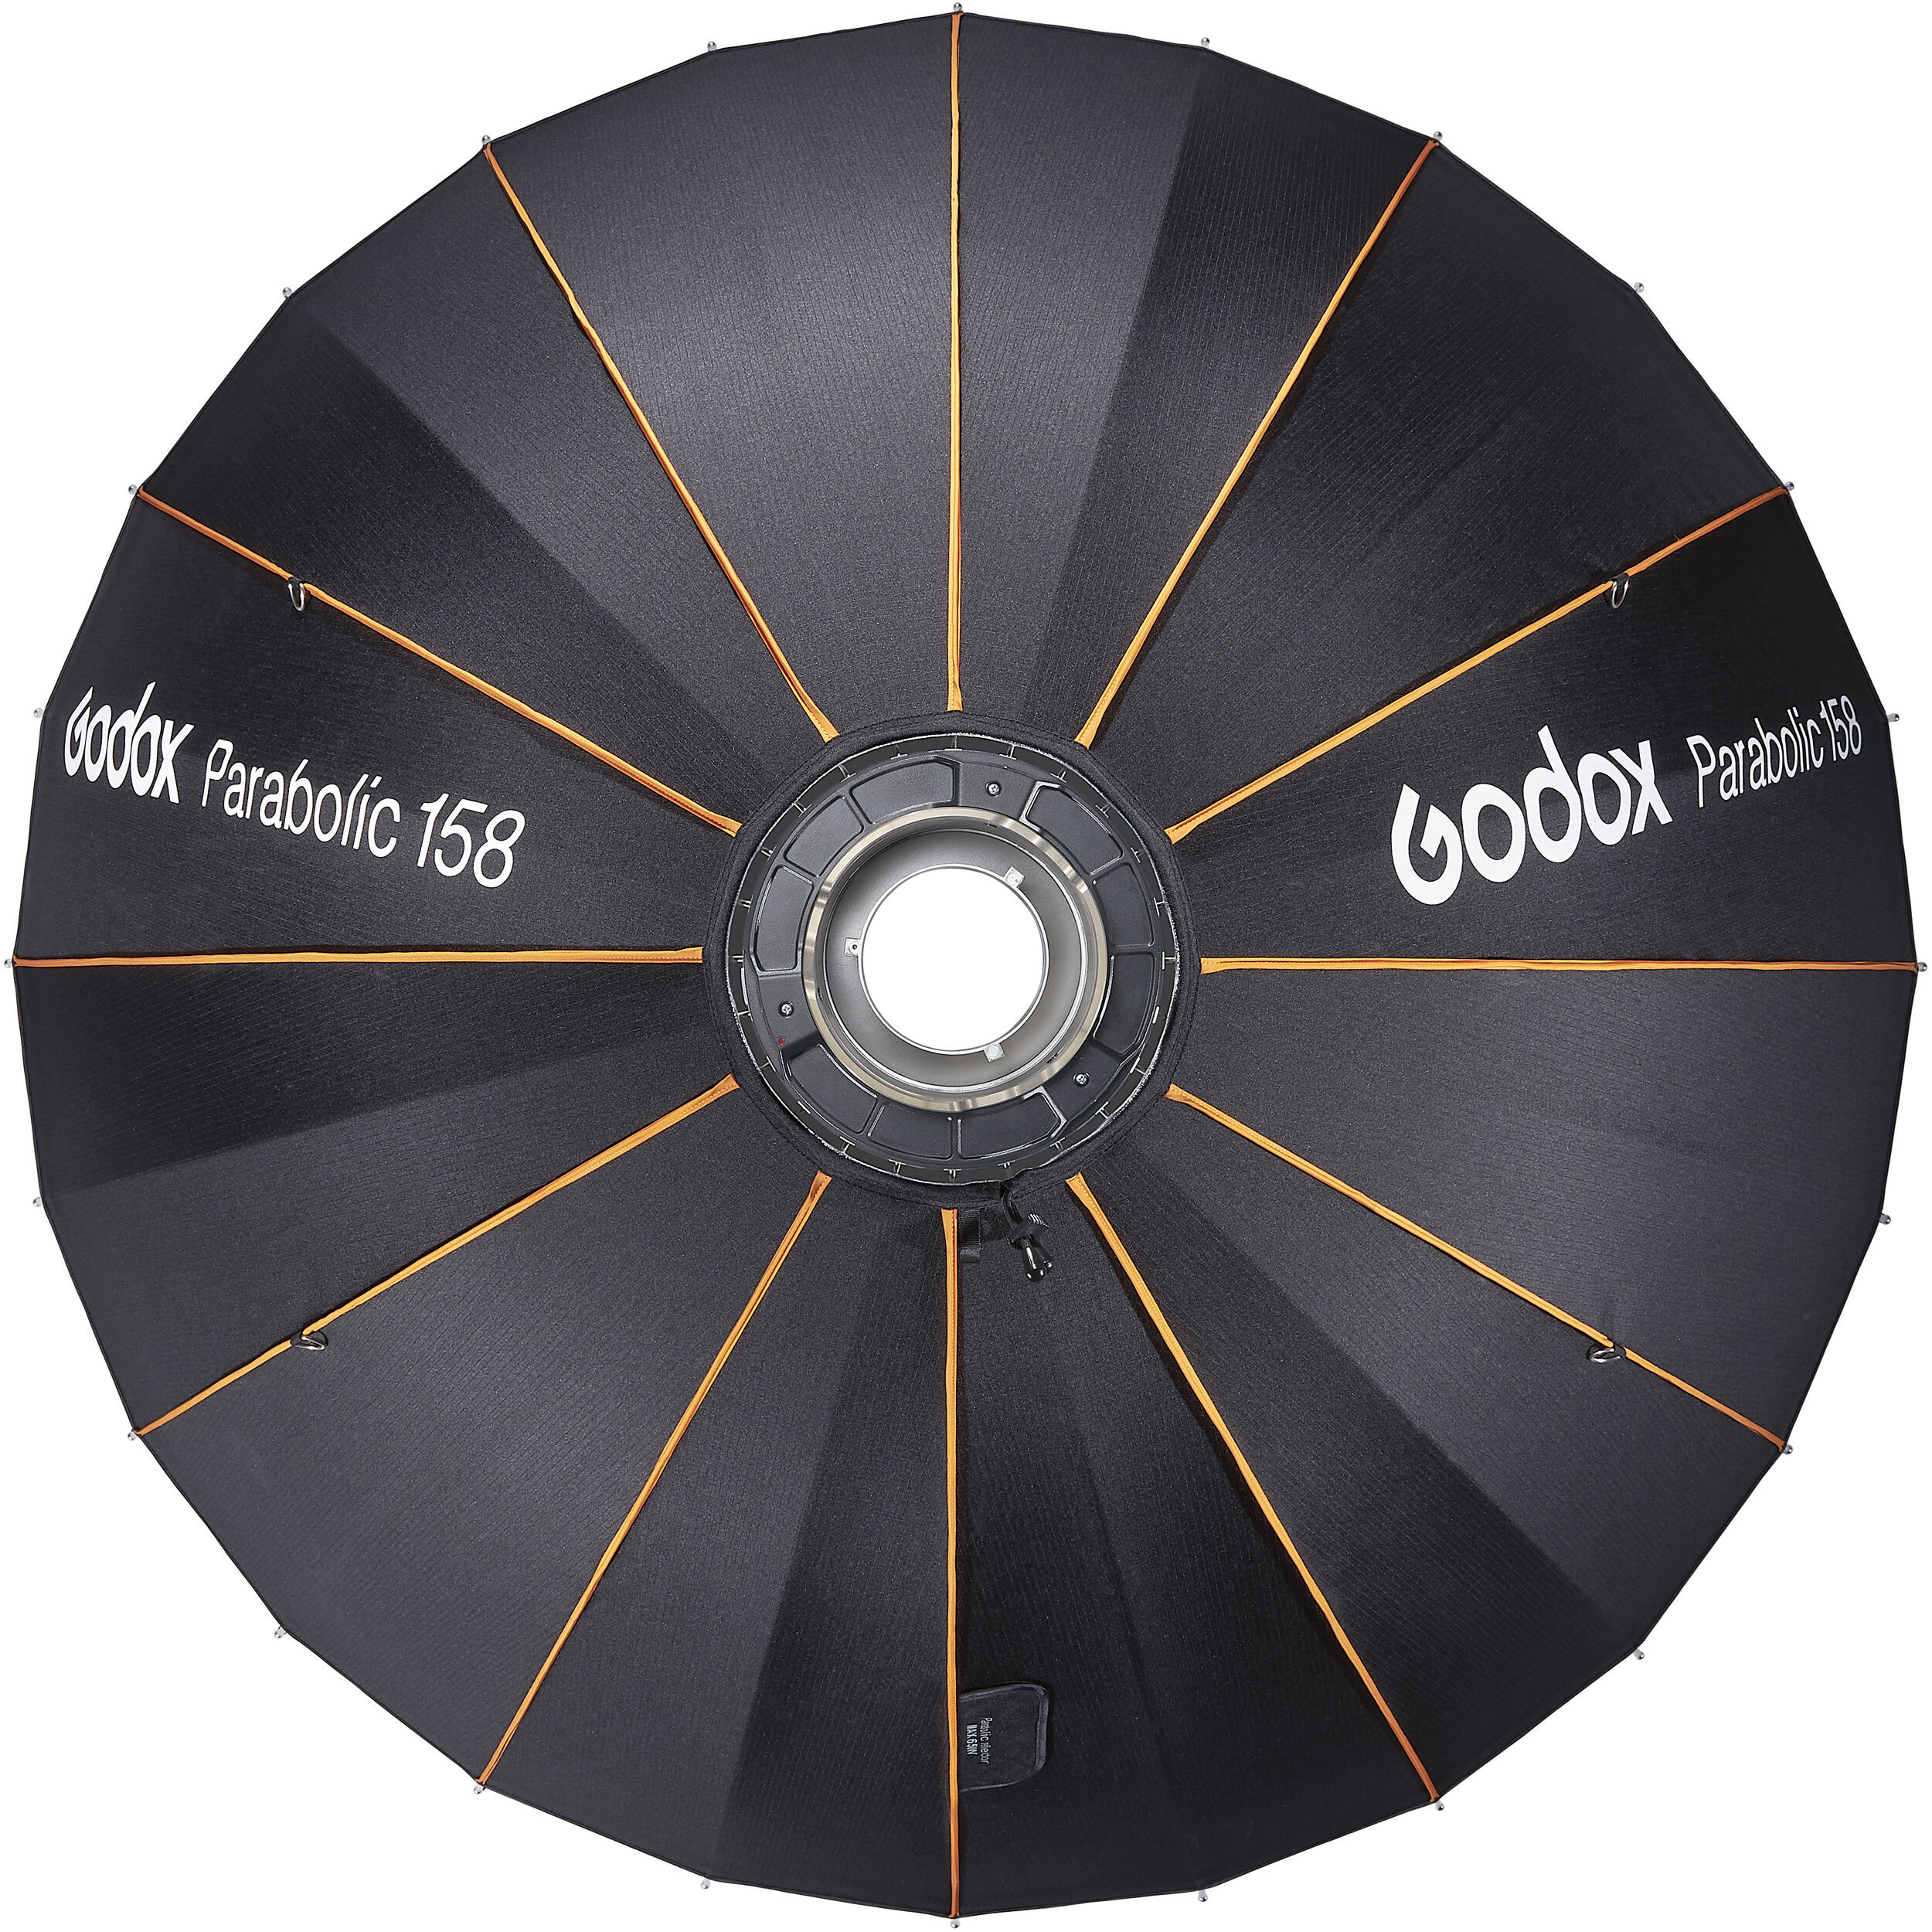 картинка Рефлектор параболический Godox Parabolic P158Kit комплект из Октобоксы от магазина Mif-Bond